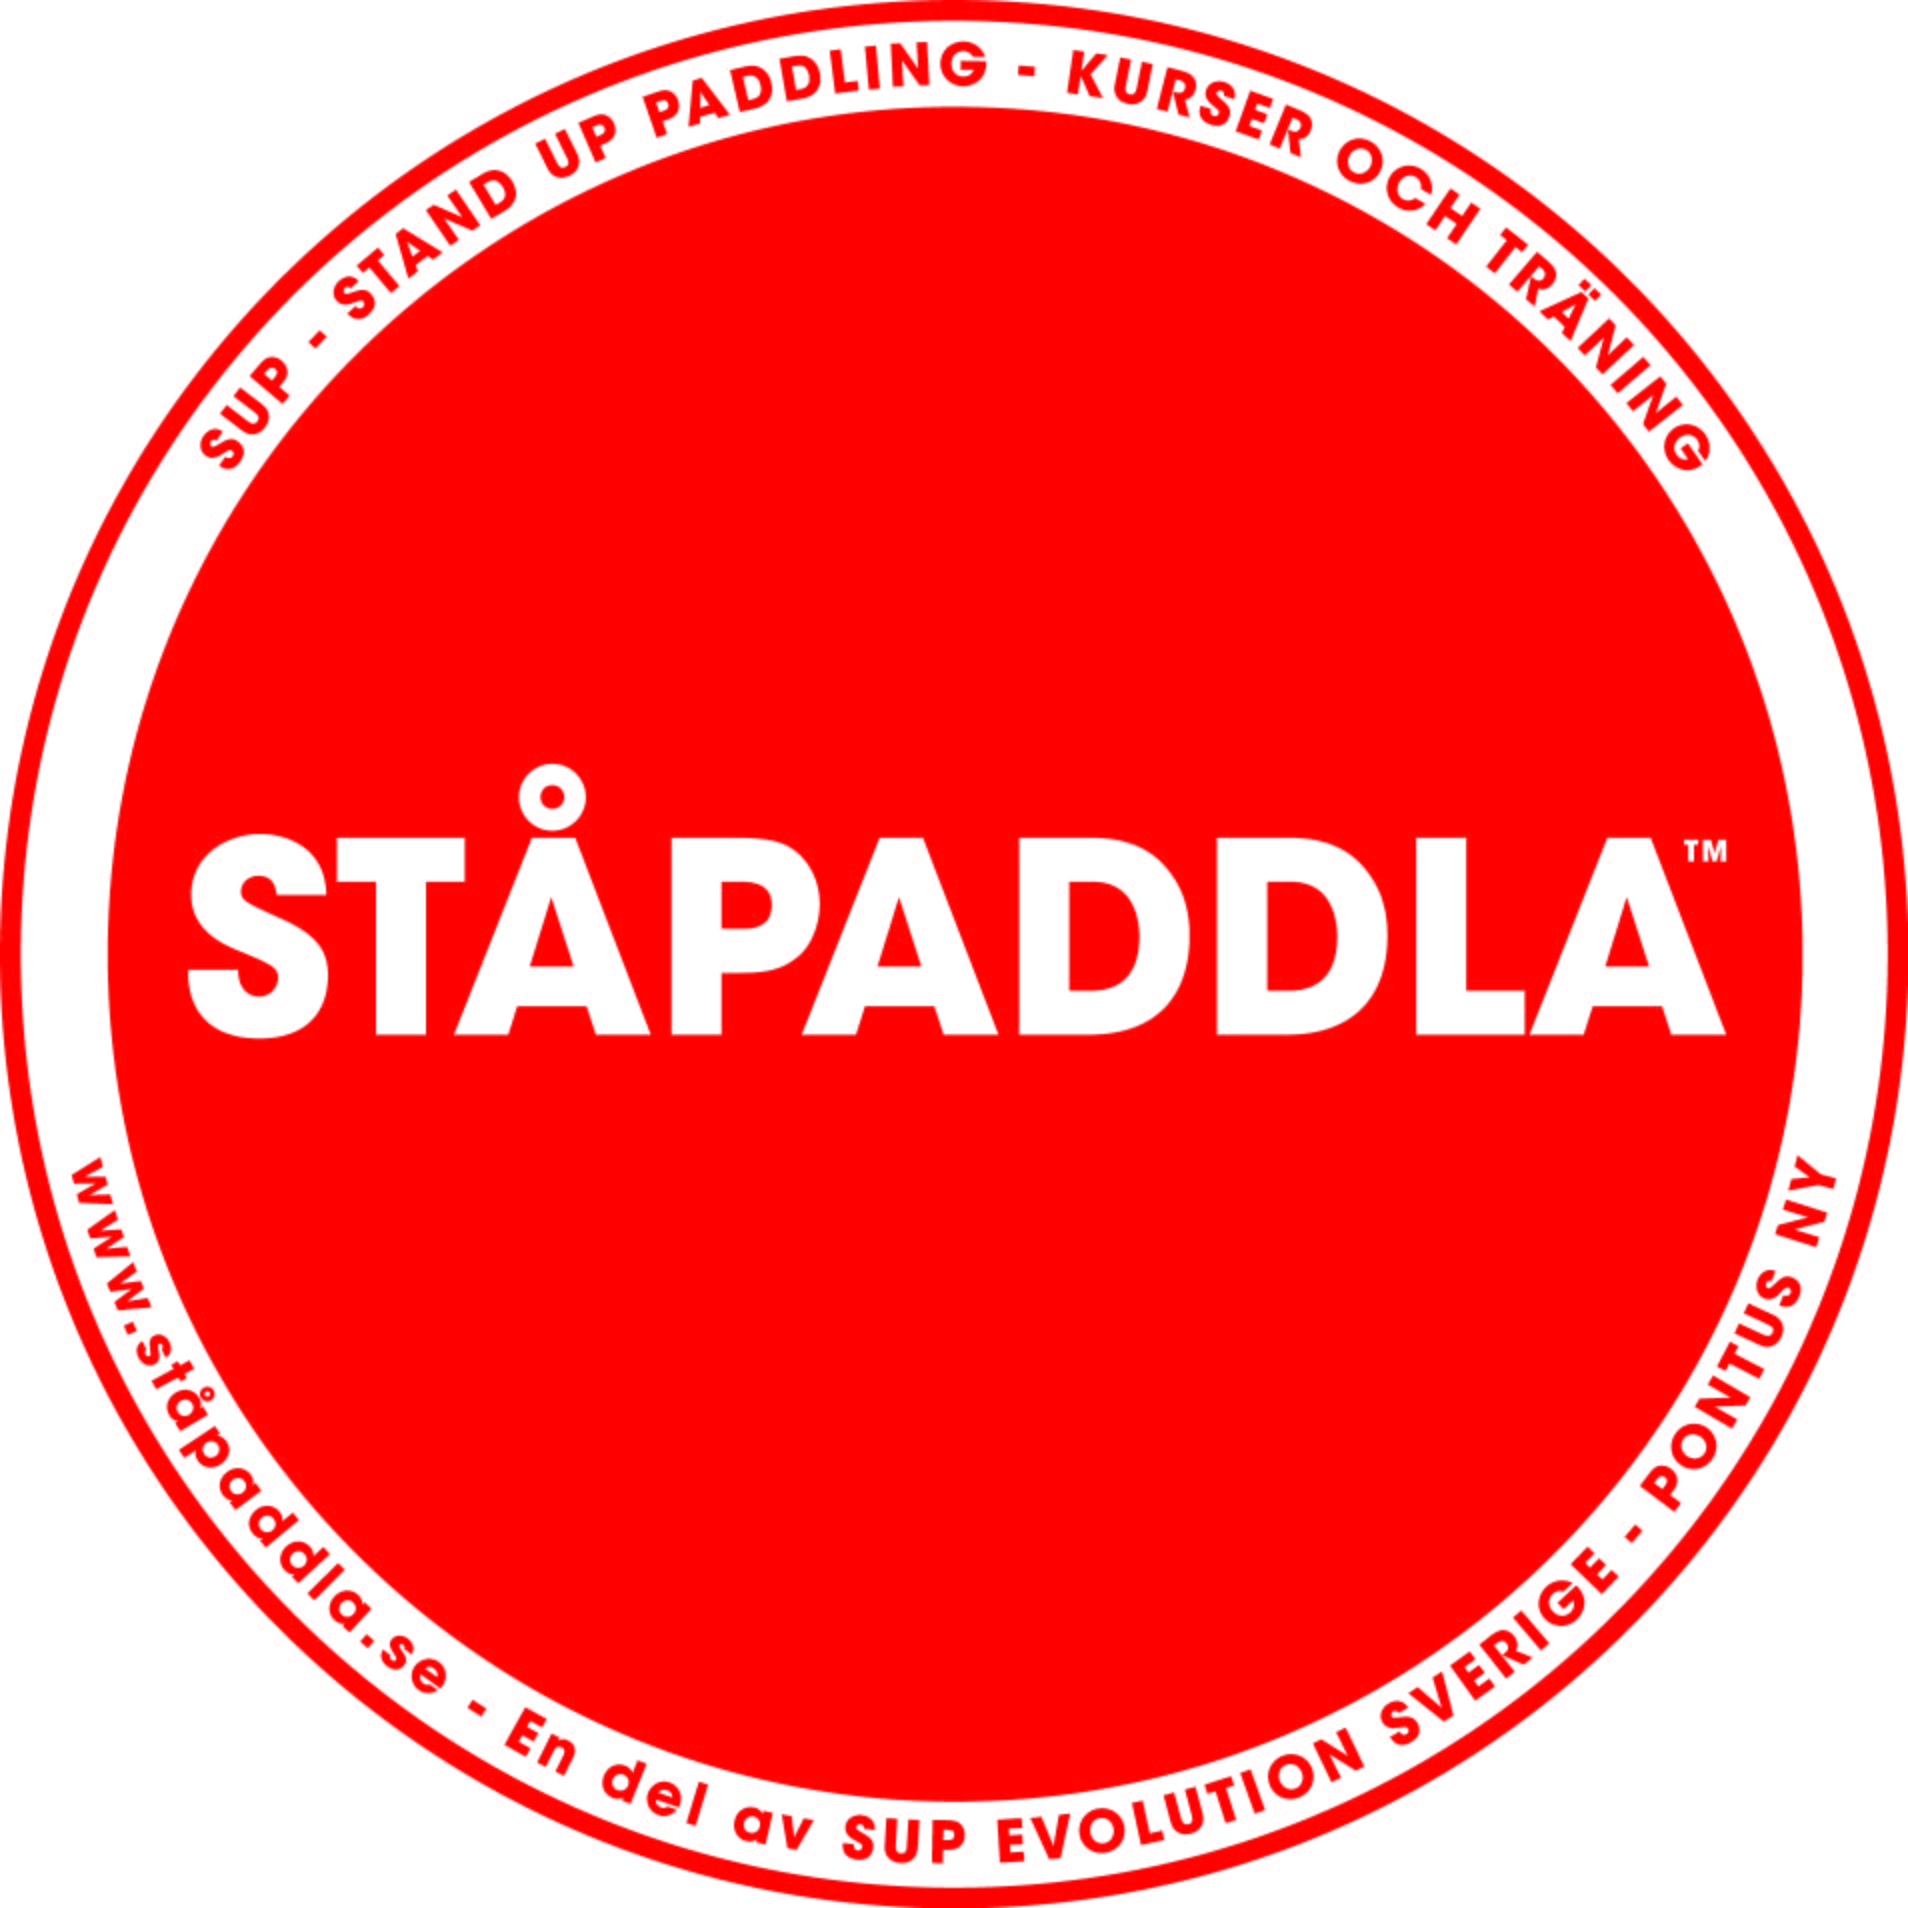 STÅPADDLA SUP - STAND UP PADDLING - KURSER OCH TRÄNING www.ståpaddla.se - En del av SUP EVOLUTION SVERIGE - PONTUS NY